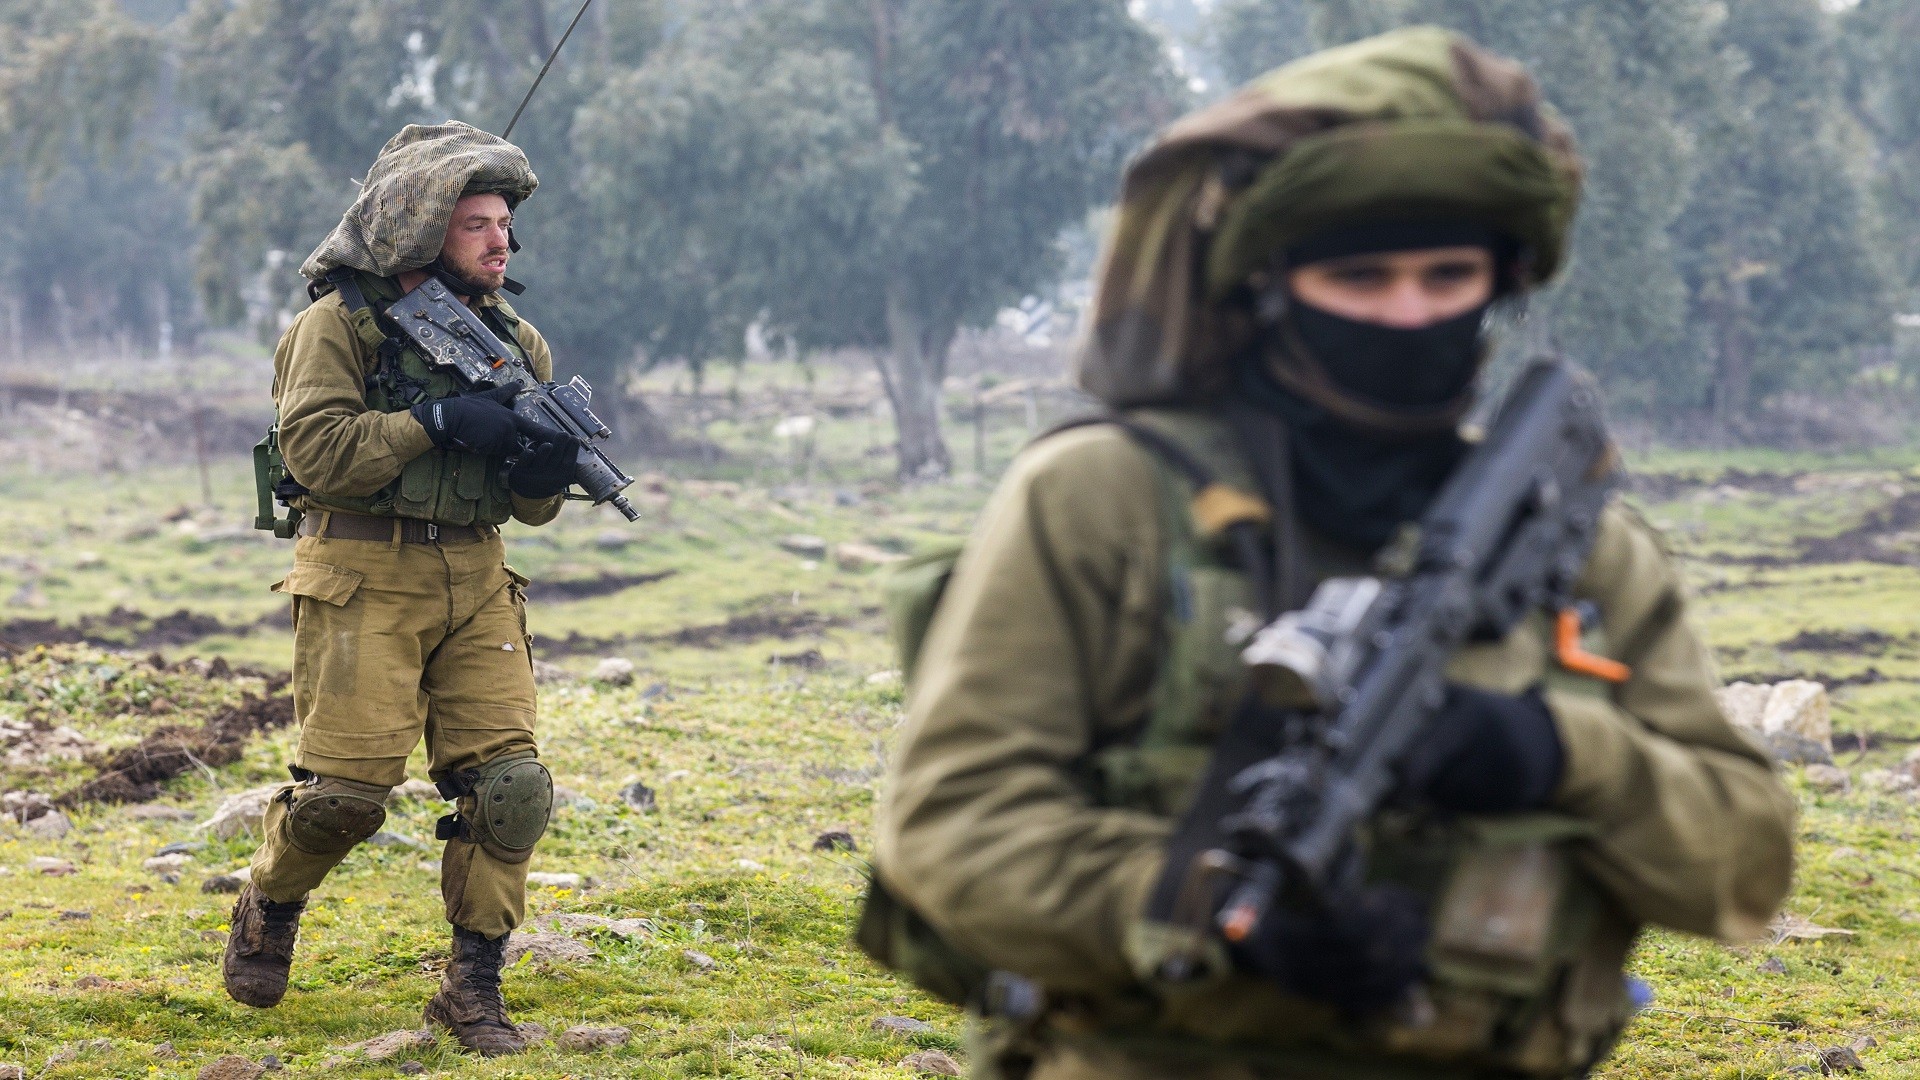 جيش الاحتلال يتخلى عن بندقية "تافور" الإسرائيلية لصالح إم 4 الأمريكية